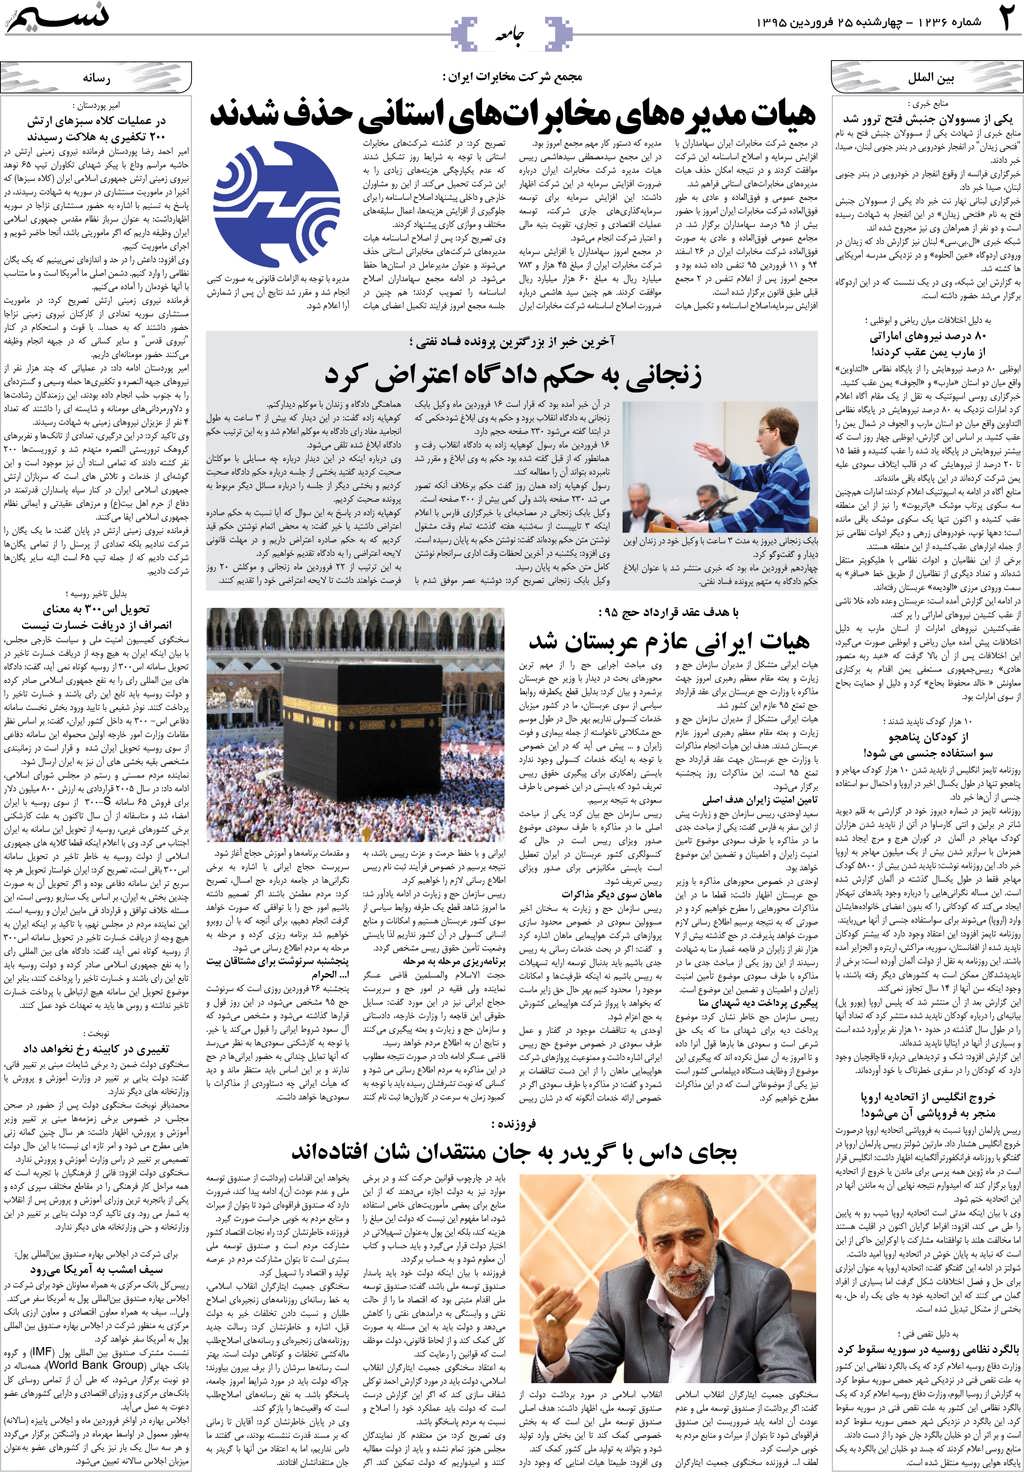 صفحه جامعه روزنامه نسیم شماره 1236